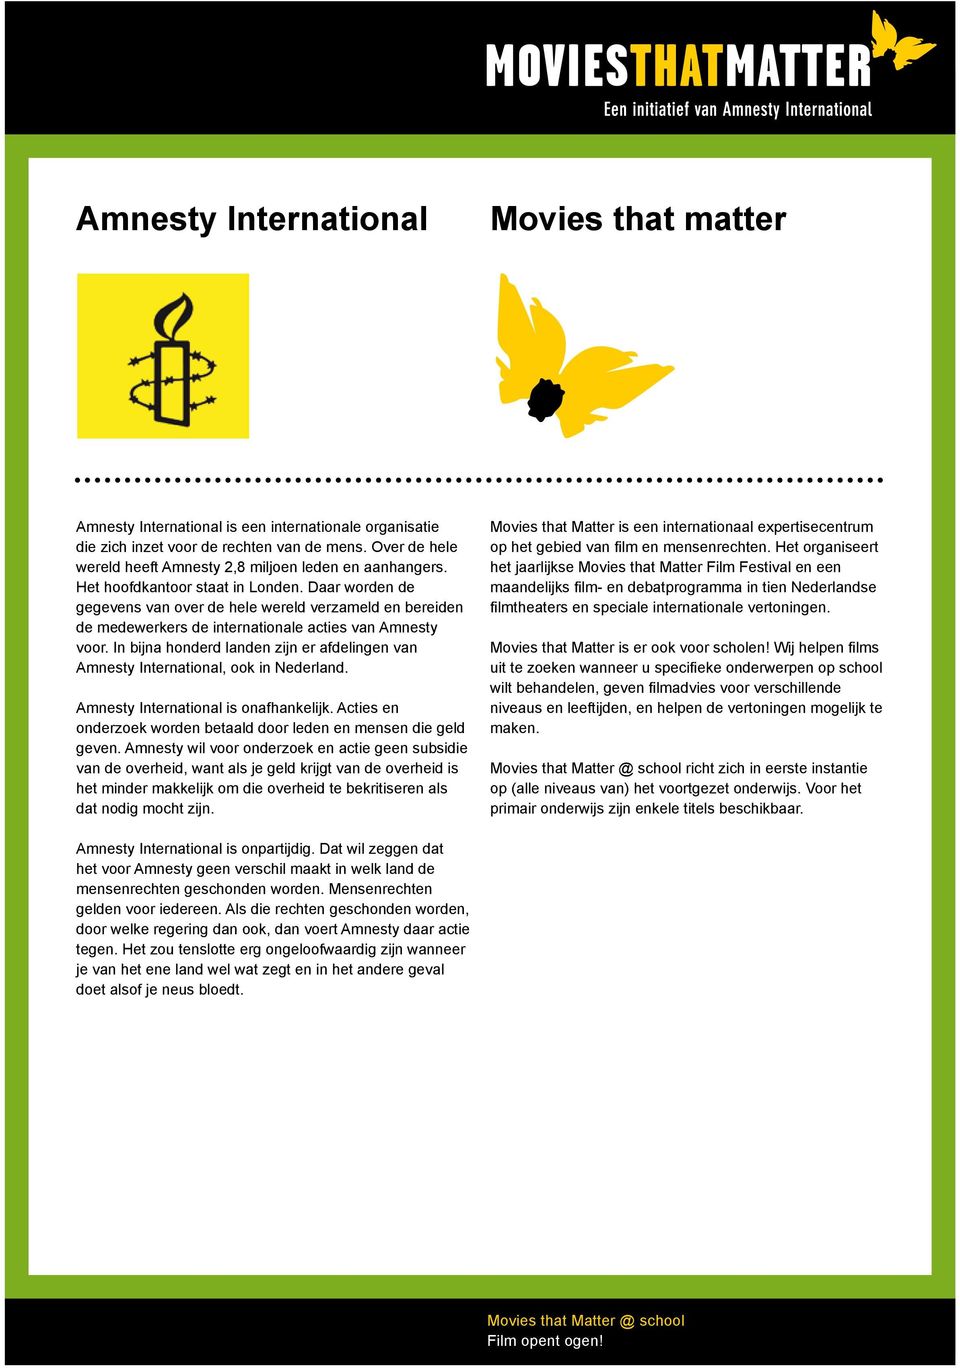 Daar worden de gegevens van over de hele wereld verzameld en bereiden de medewerkers de internationale acties van Amnesty voor.